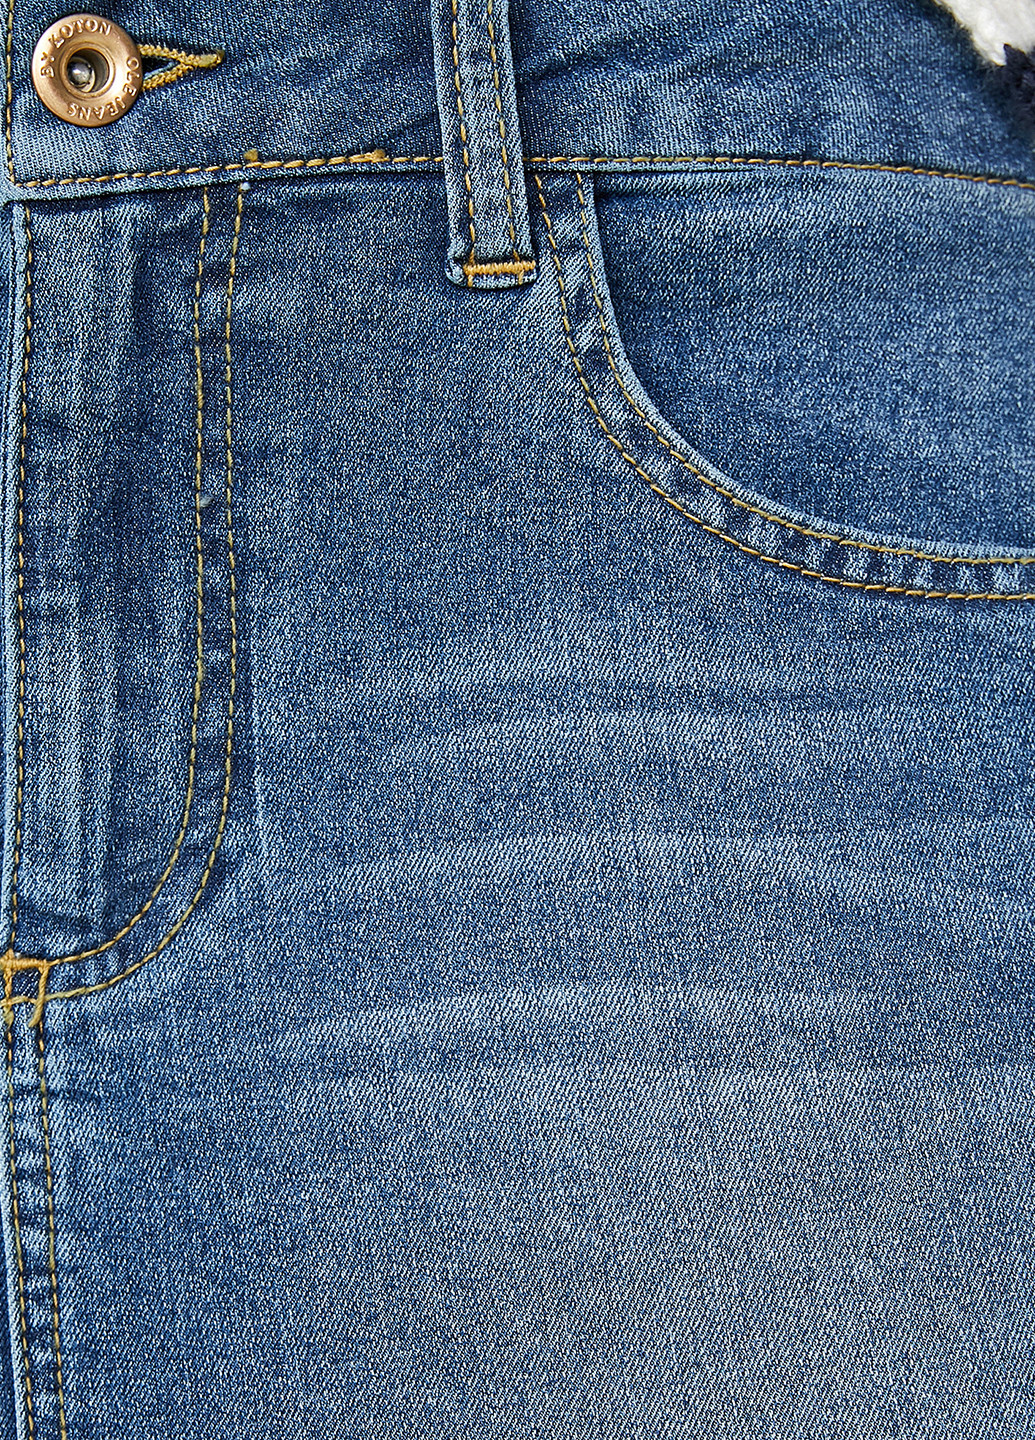 Голубая джинсовая юбка KOTON карандаш